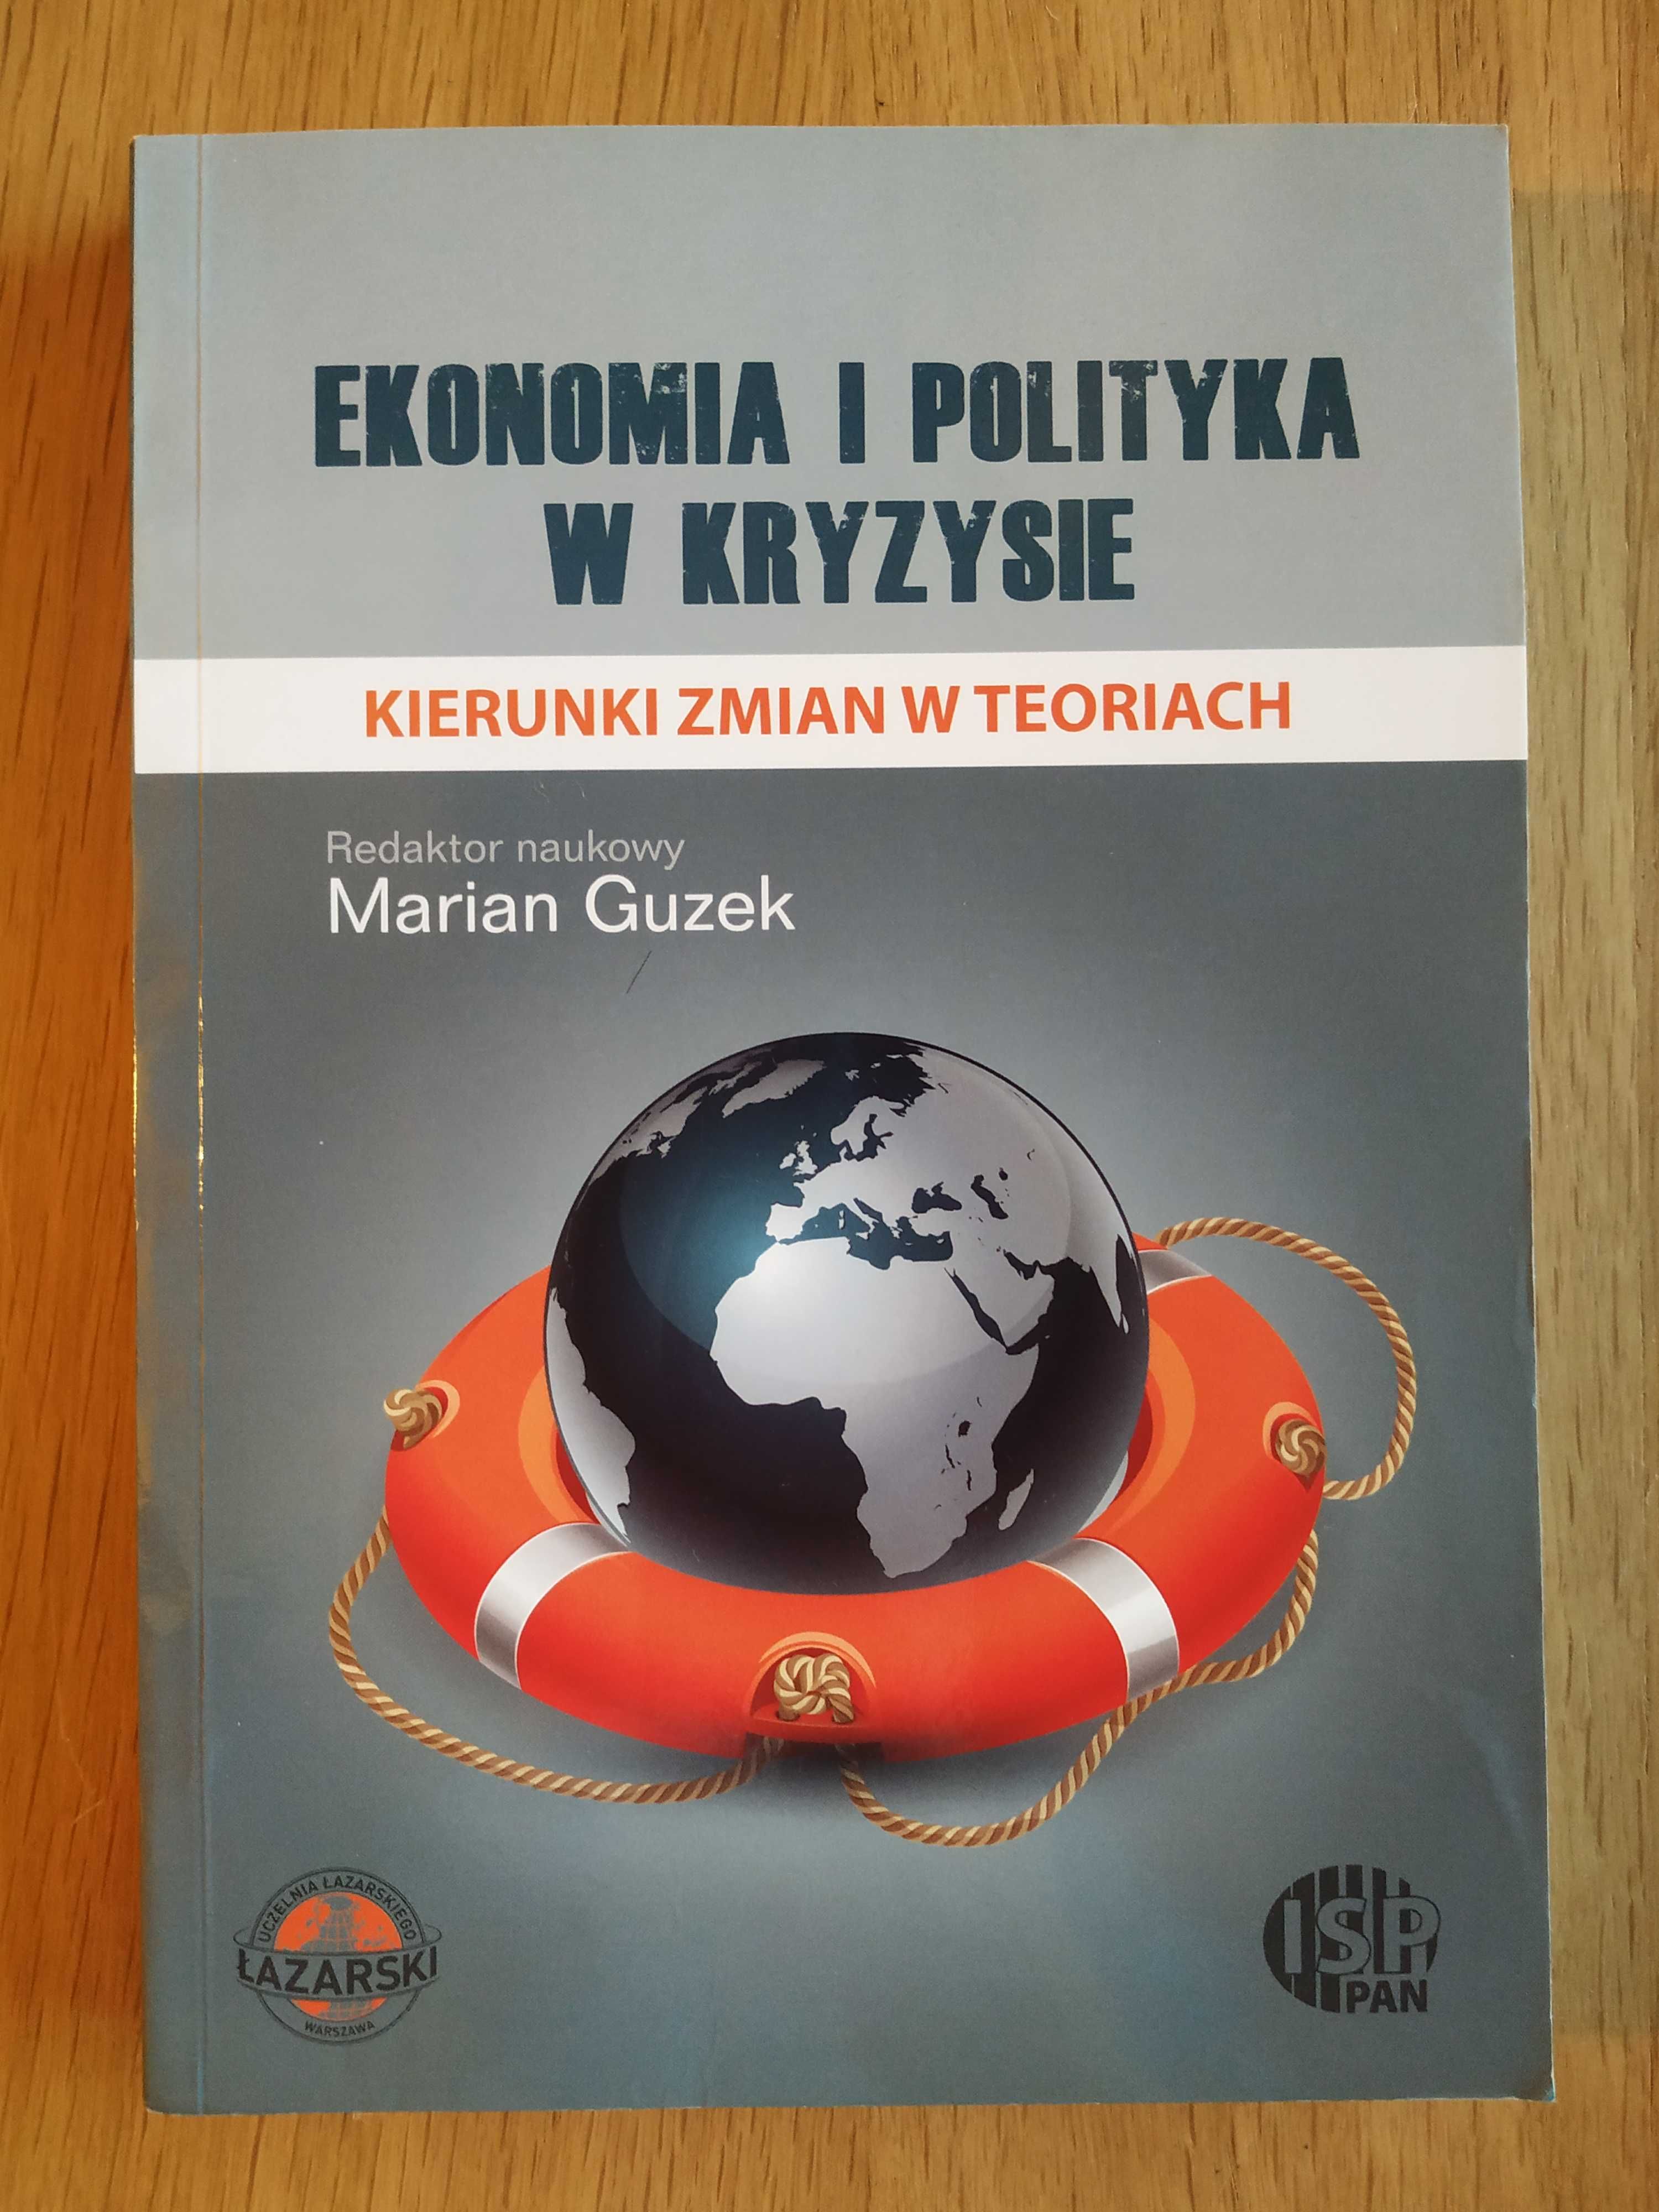 Ekonomia i polityka w kryzysie - Marian Guzek